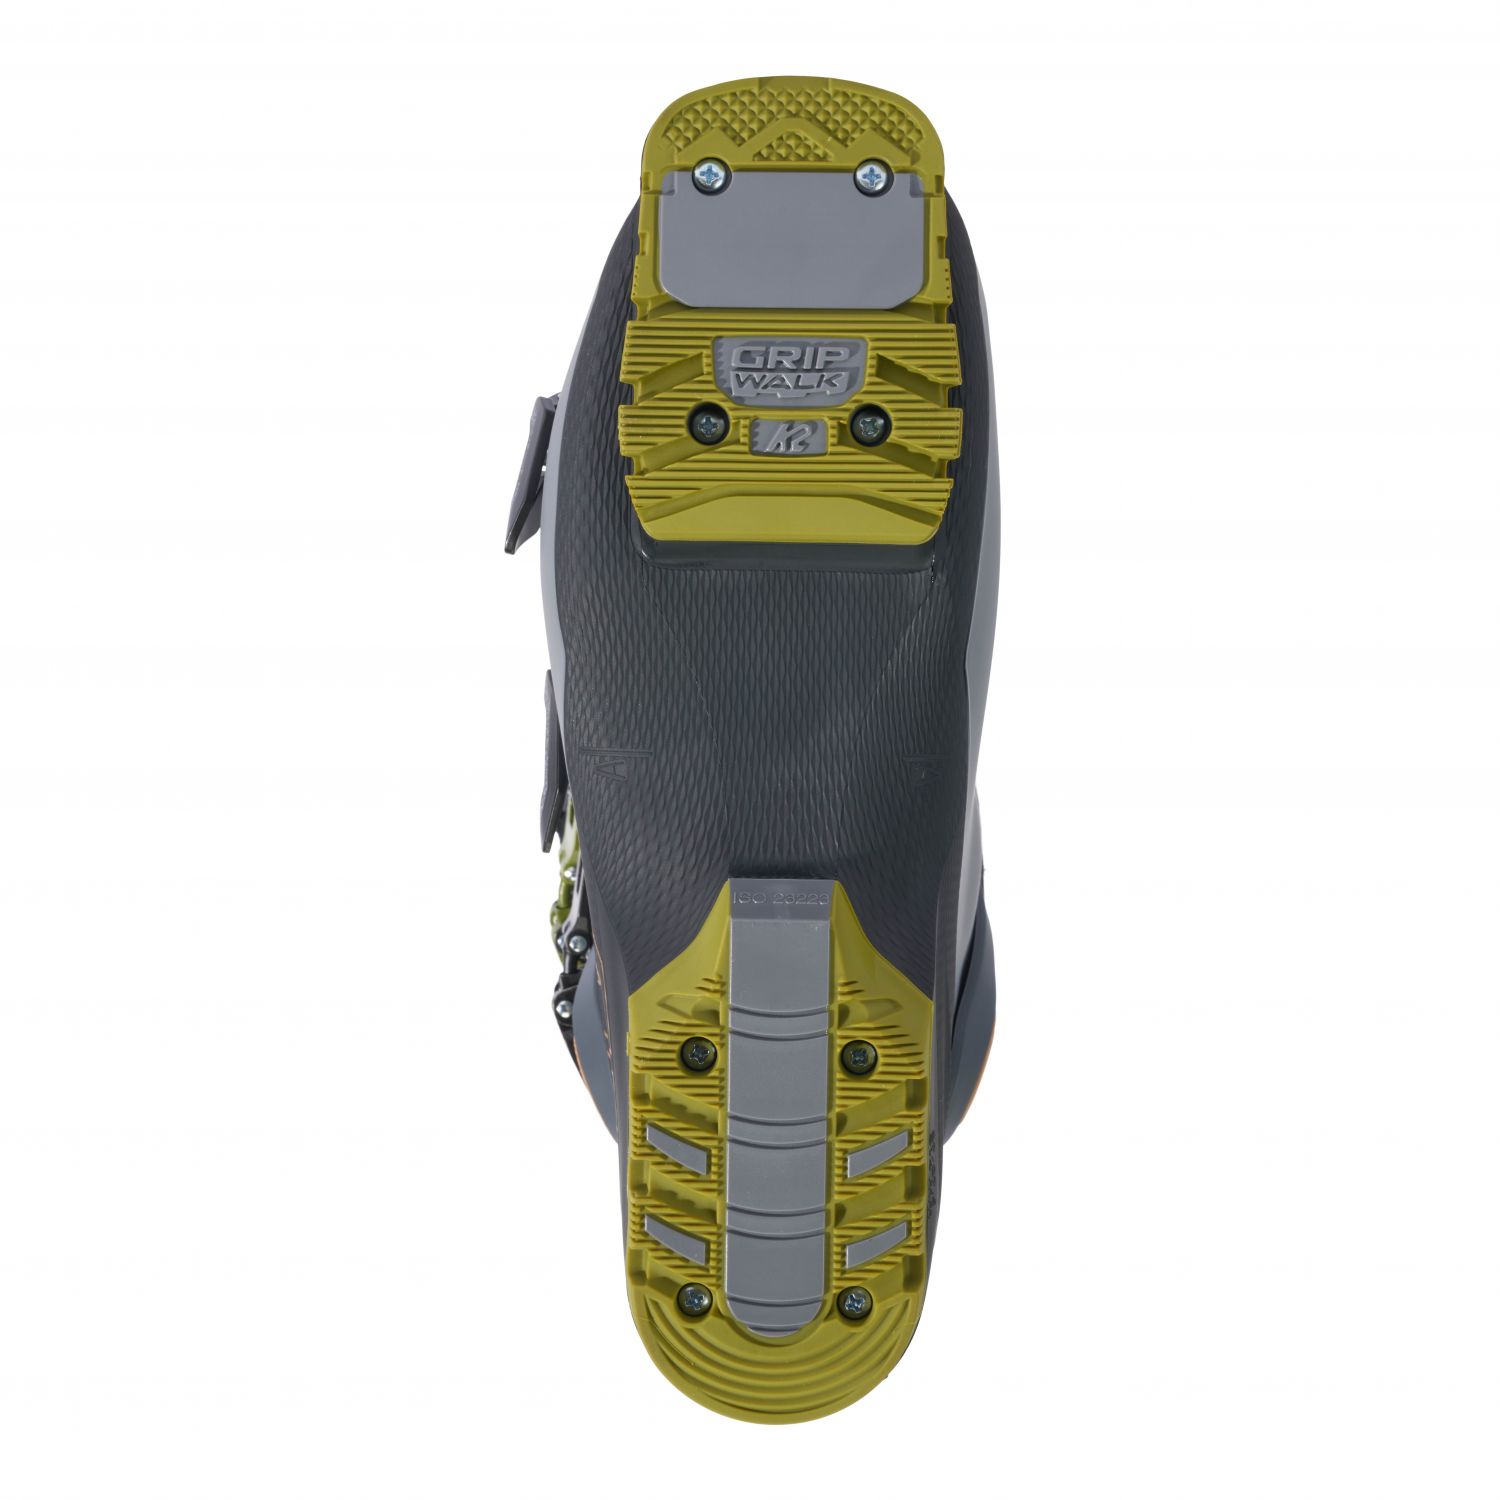 K2 Recon 120 MV, chaussures de ski, hommes, gris